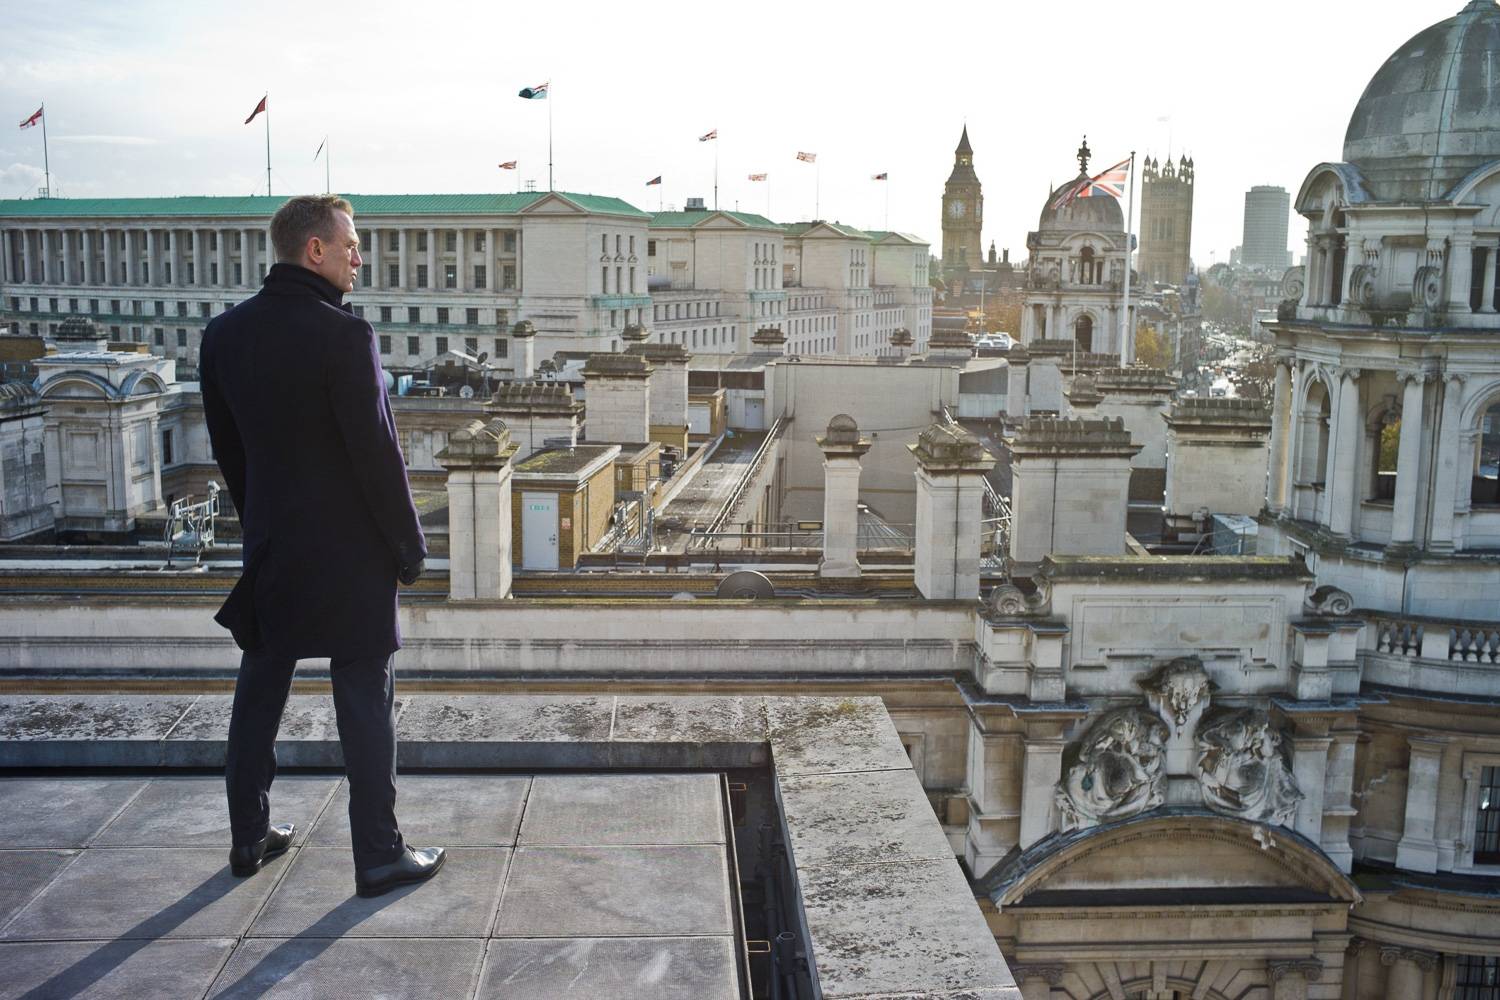 James Bond e oltre: Londra location perfetta per un film